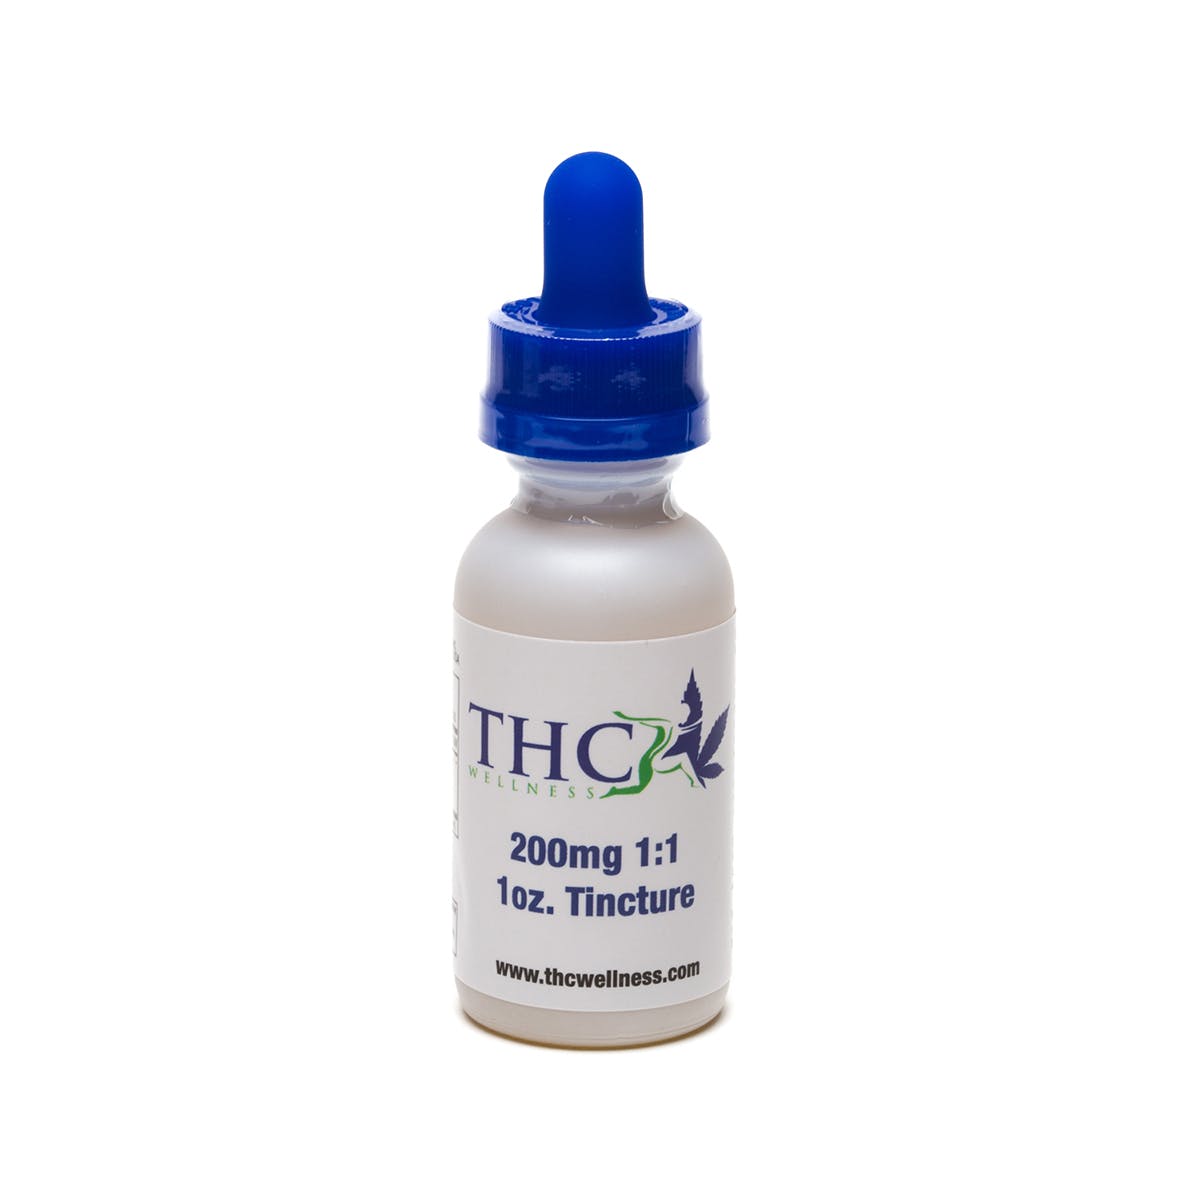 THC Wellness THC:CBD 1:1 Tincture 200mg